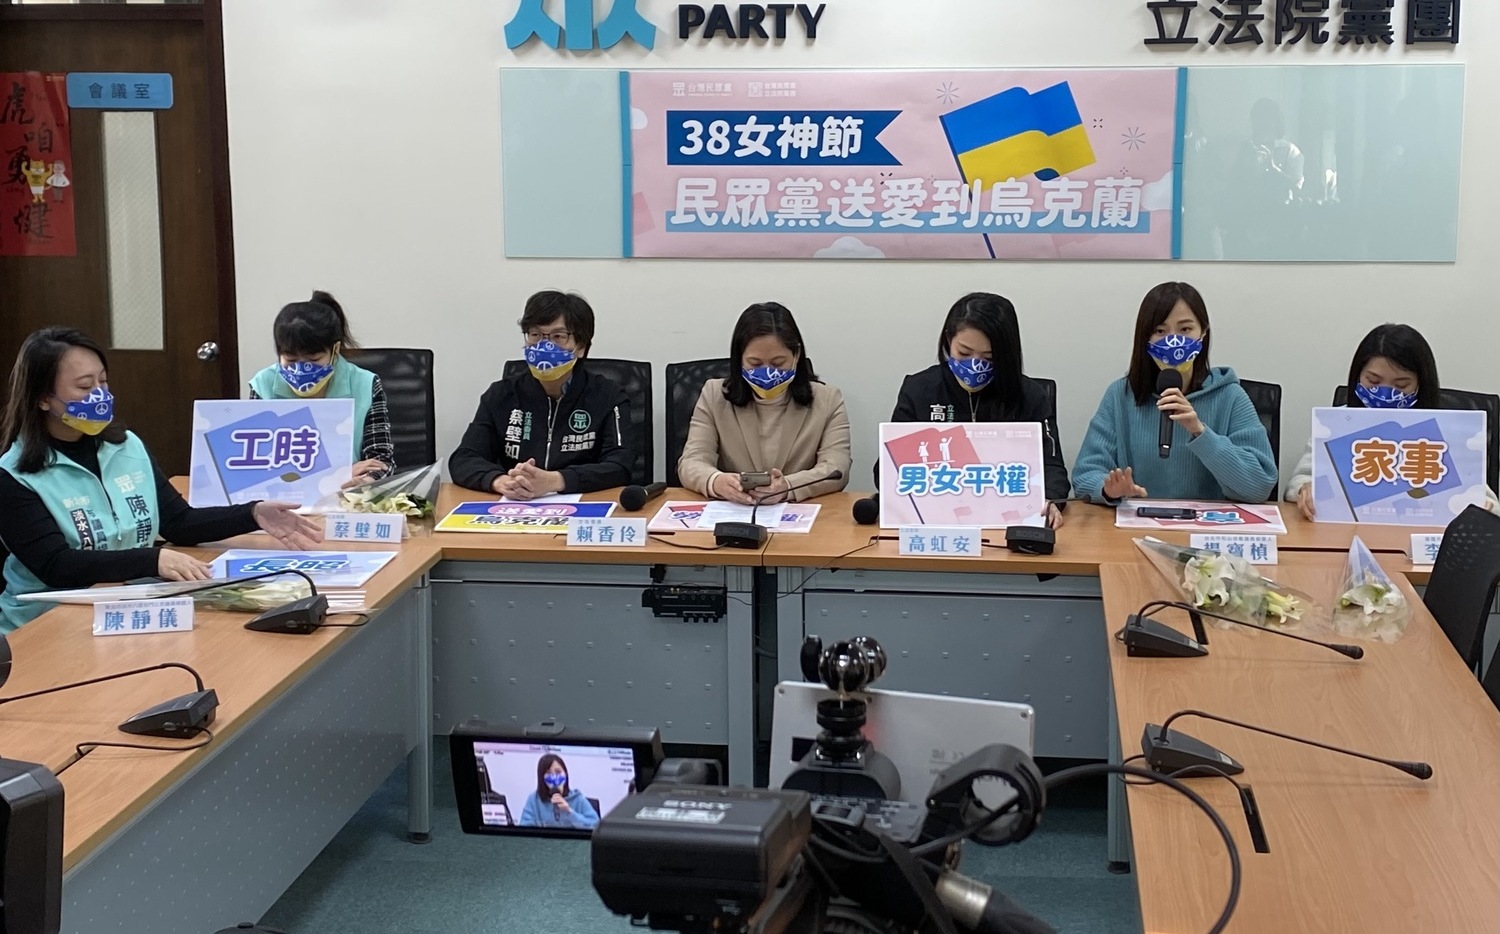 38婦女節為烏克蘭祈福 民眾黨3女立委籲政府促性別平權 | 政治 | |